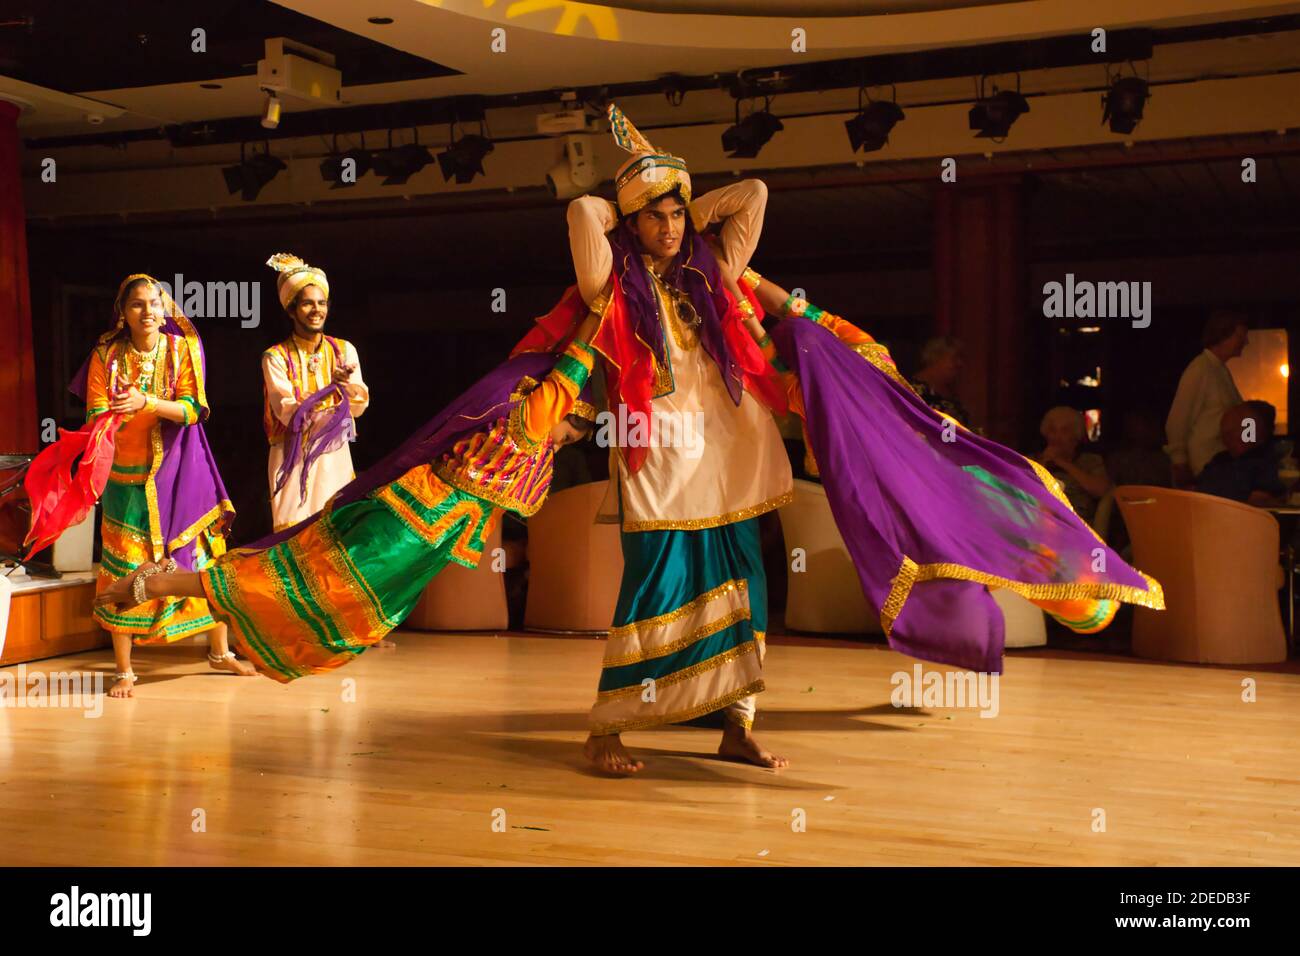 Bailarines folklóricos dan una actuación en Mumbai, India y un bailarín masculino retuerce a dos bailarinas alrededor de él, todo en trajes coloridos Foto de stock